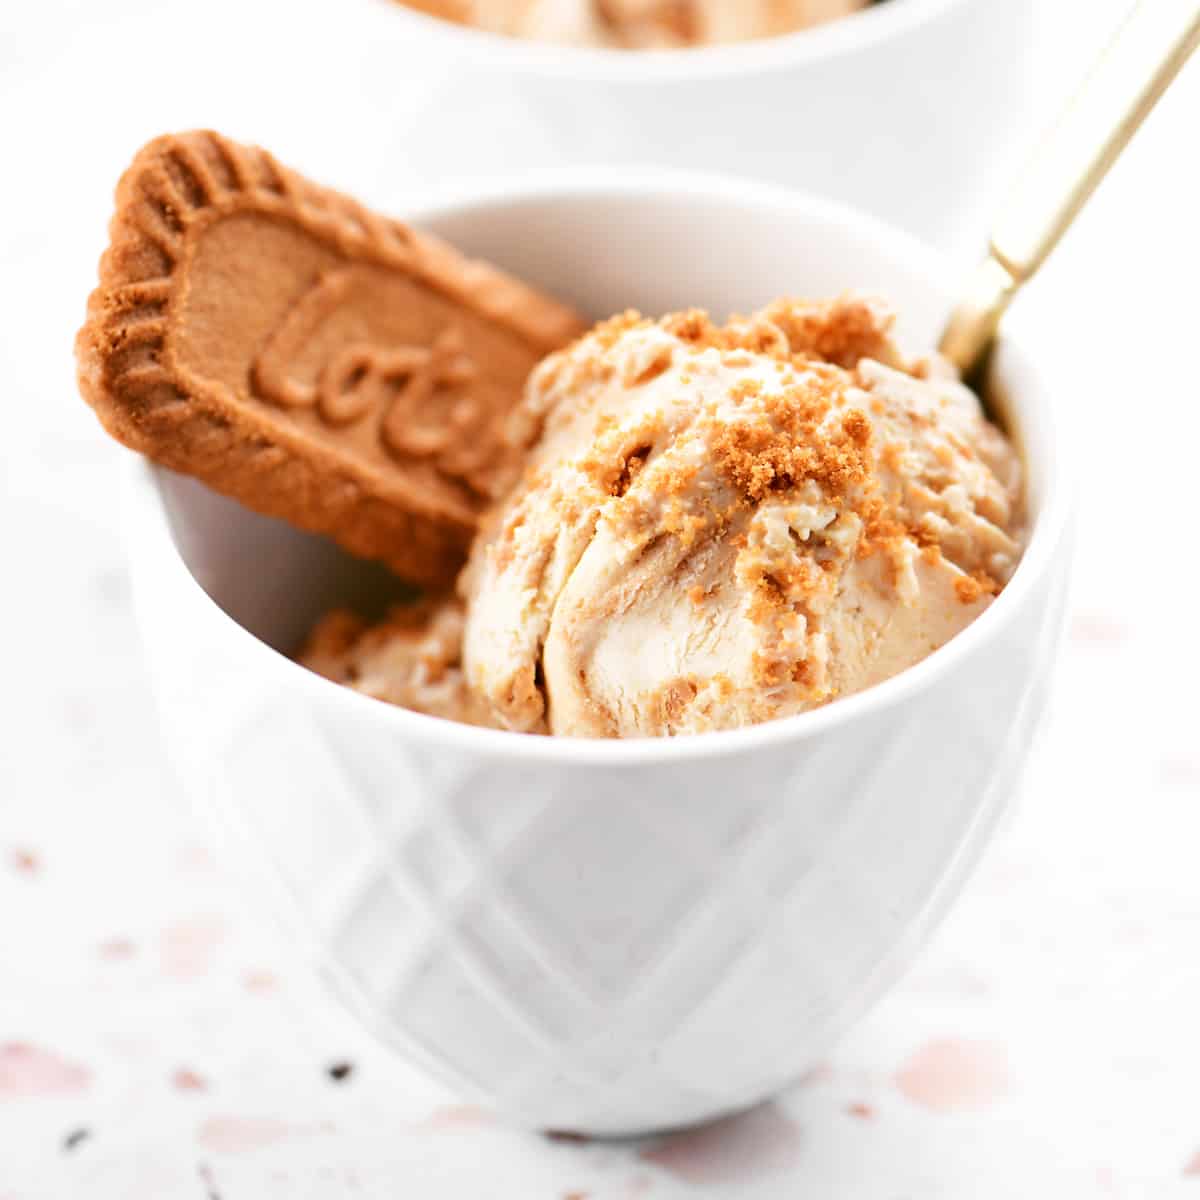 REVIEW: Lotus Biscoff Ice Cream - The Impulsive Buy